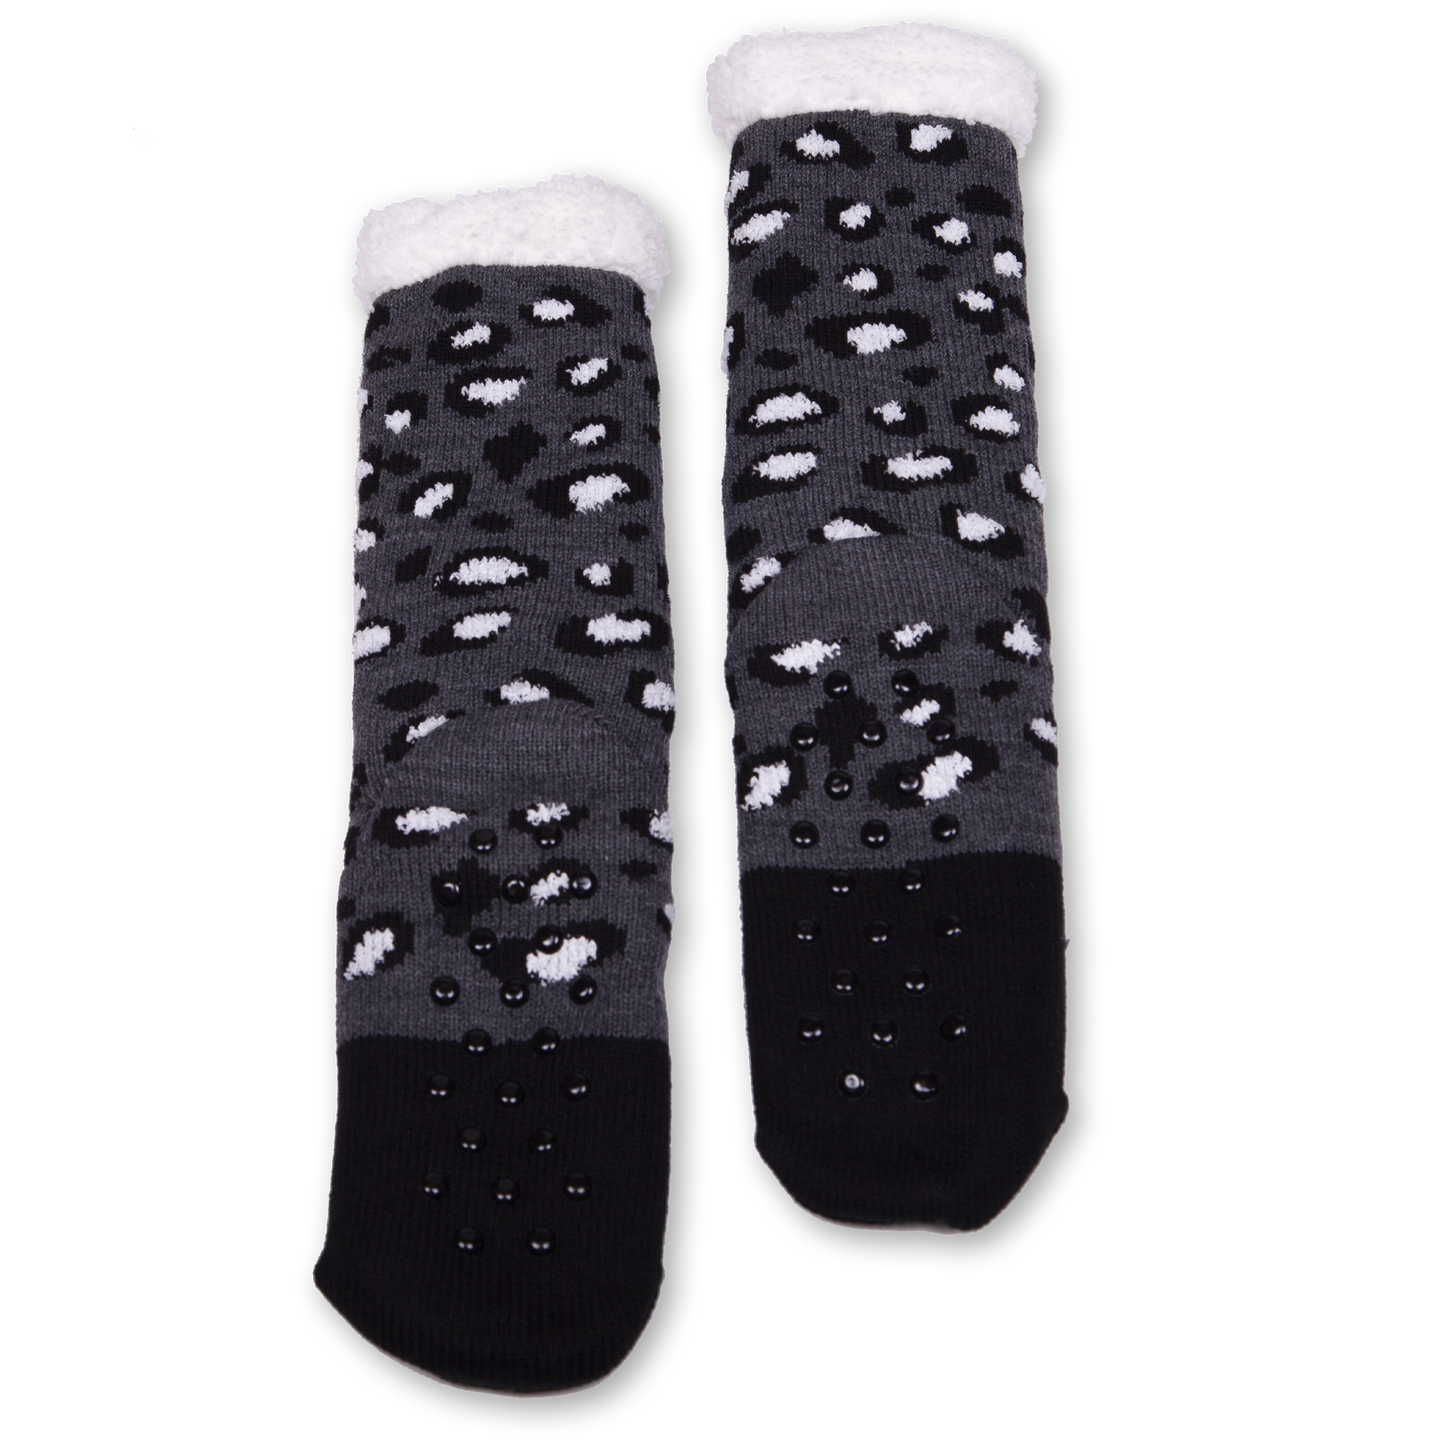 Women's Black Cat Cozy Warmer Slipper Socks with Sherpa Lining